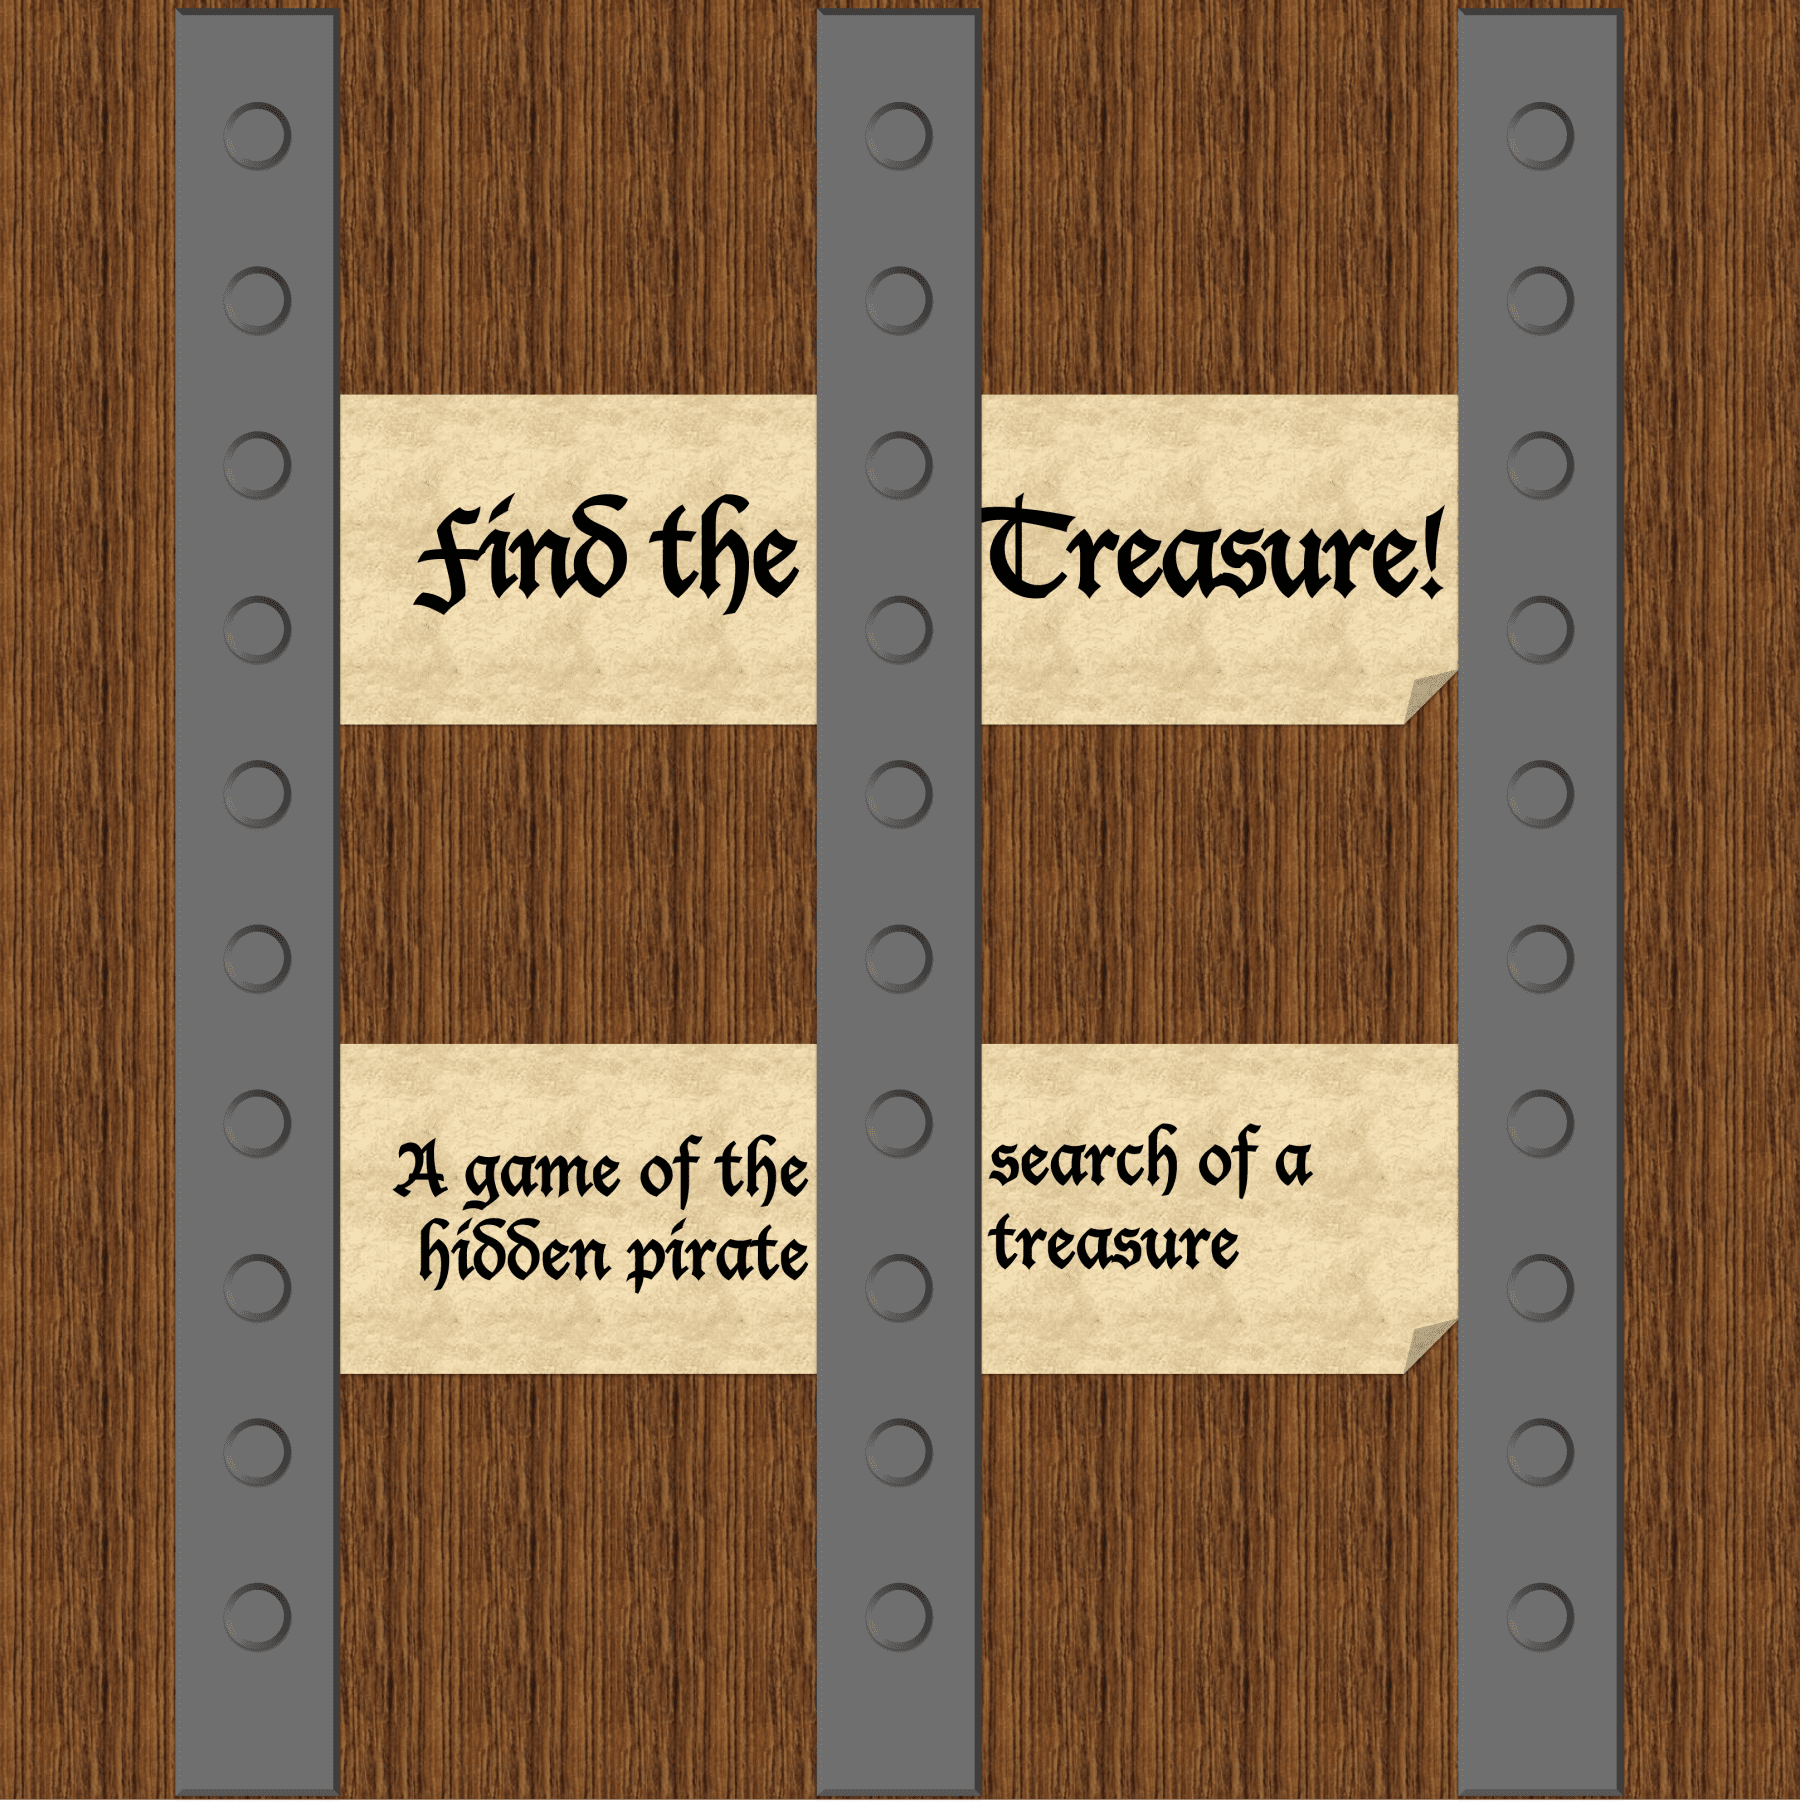 Find the Treasure!